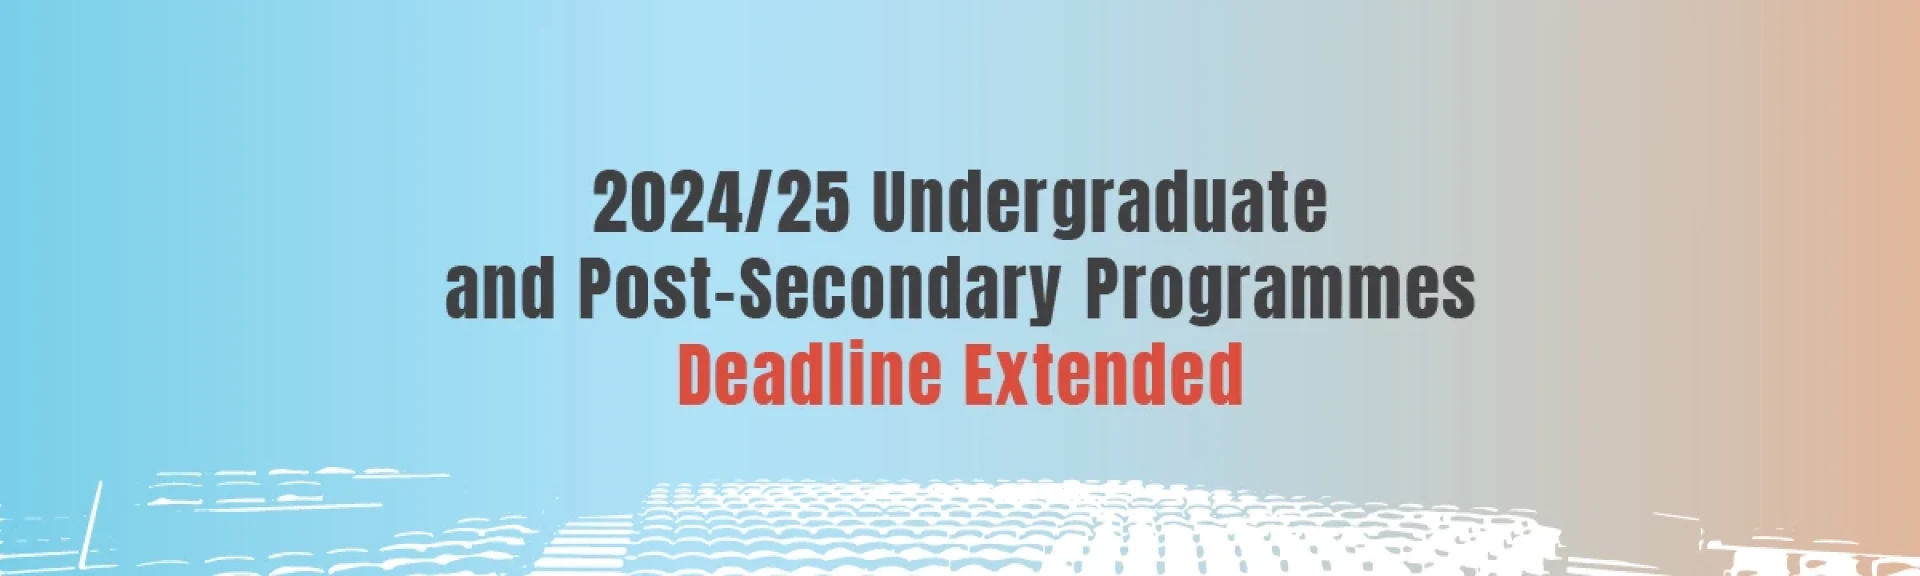 Deadline for 2024/25 Undergrad & Post-secondary Programmes Extended